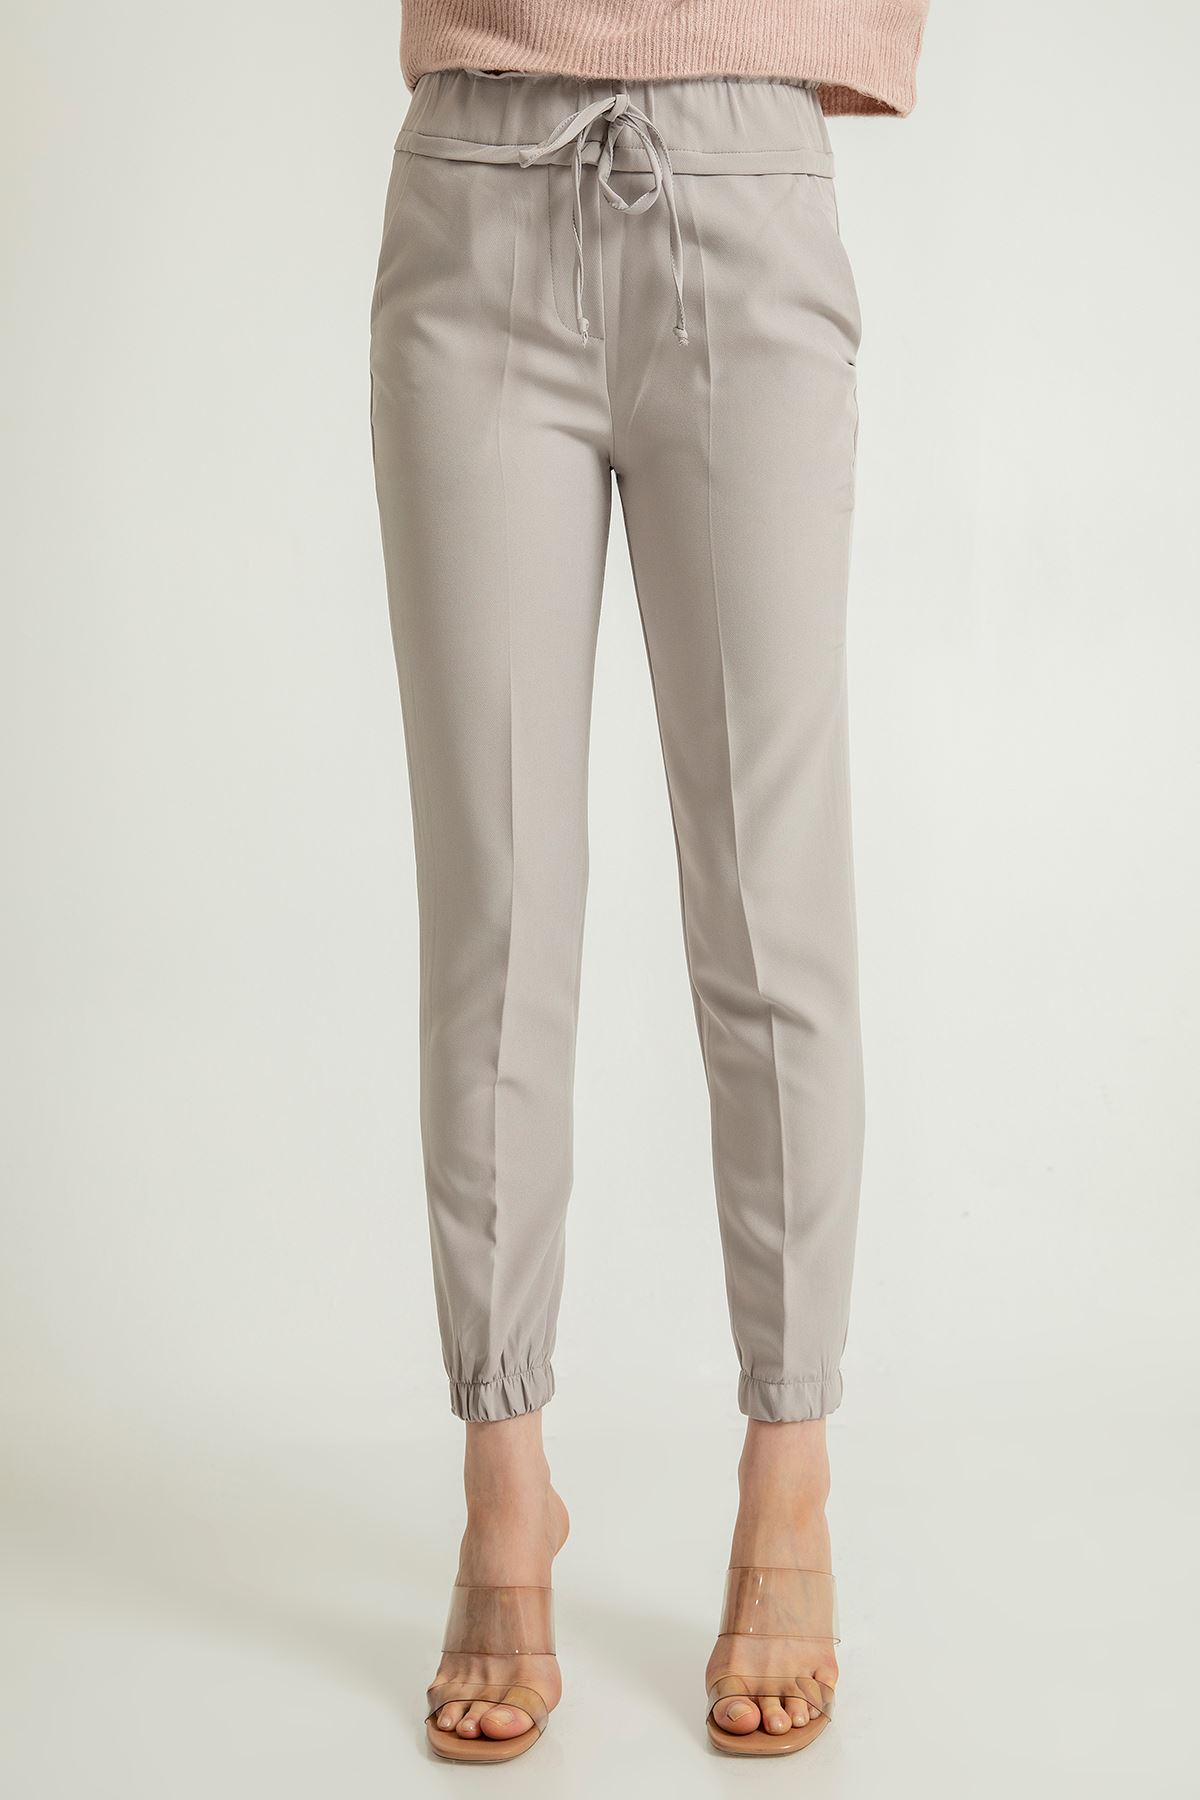 атласный ткань Женские брюки с эластичной резинкой на талии - Серый